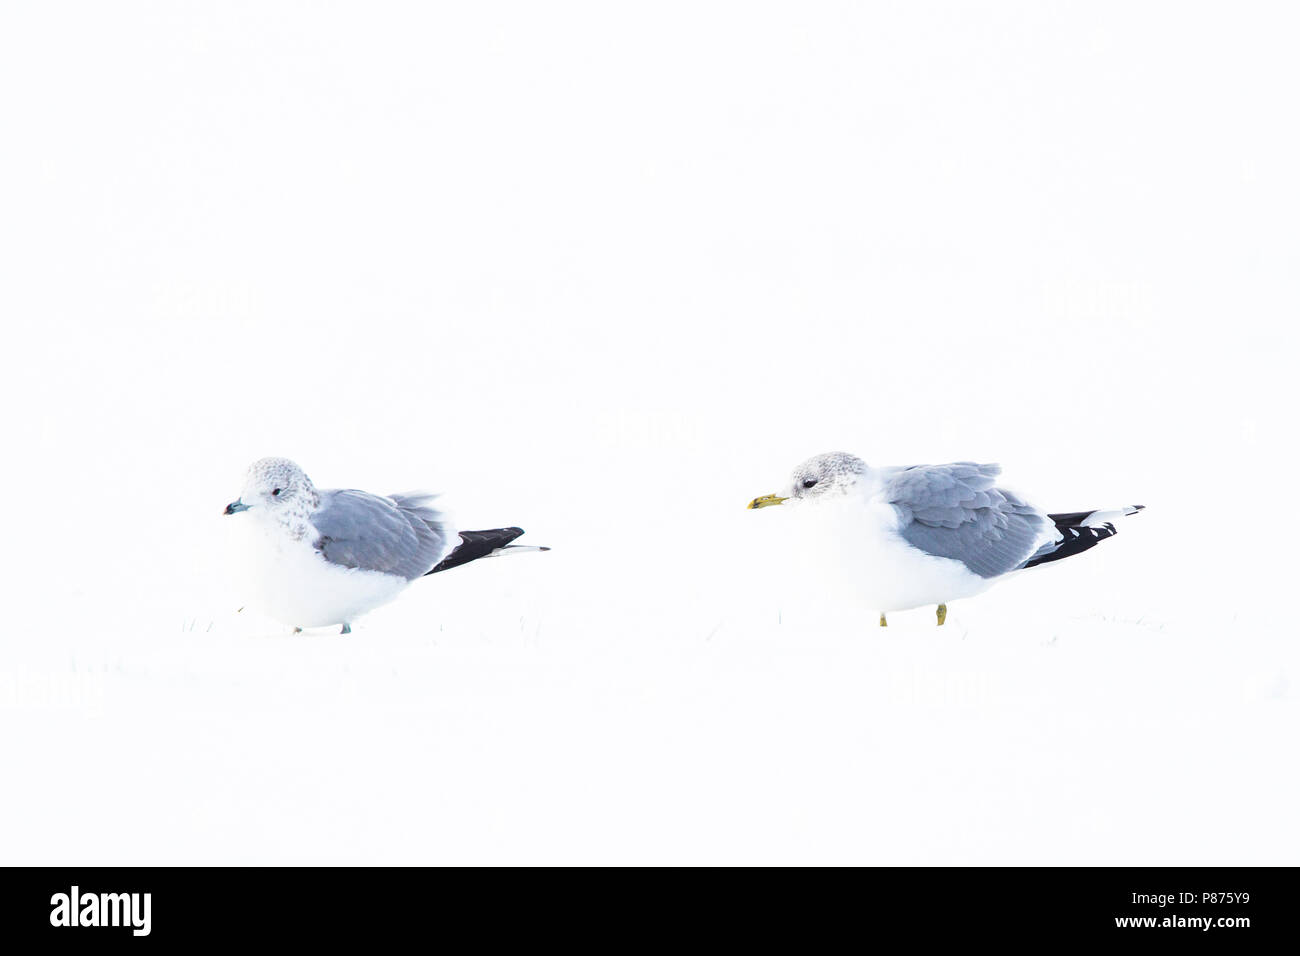 Stormmeeuw in de sneeuw Nederlands, Mew Gull im Schnee Niederlande Stockfoto